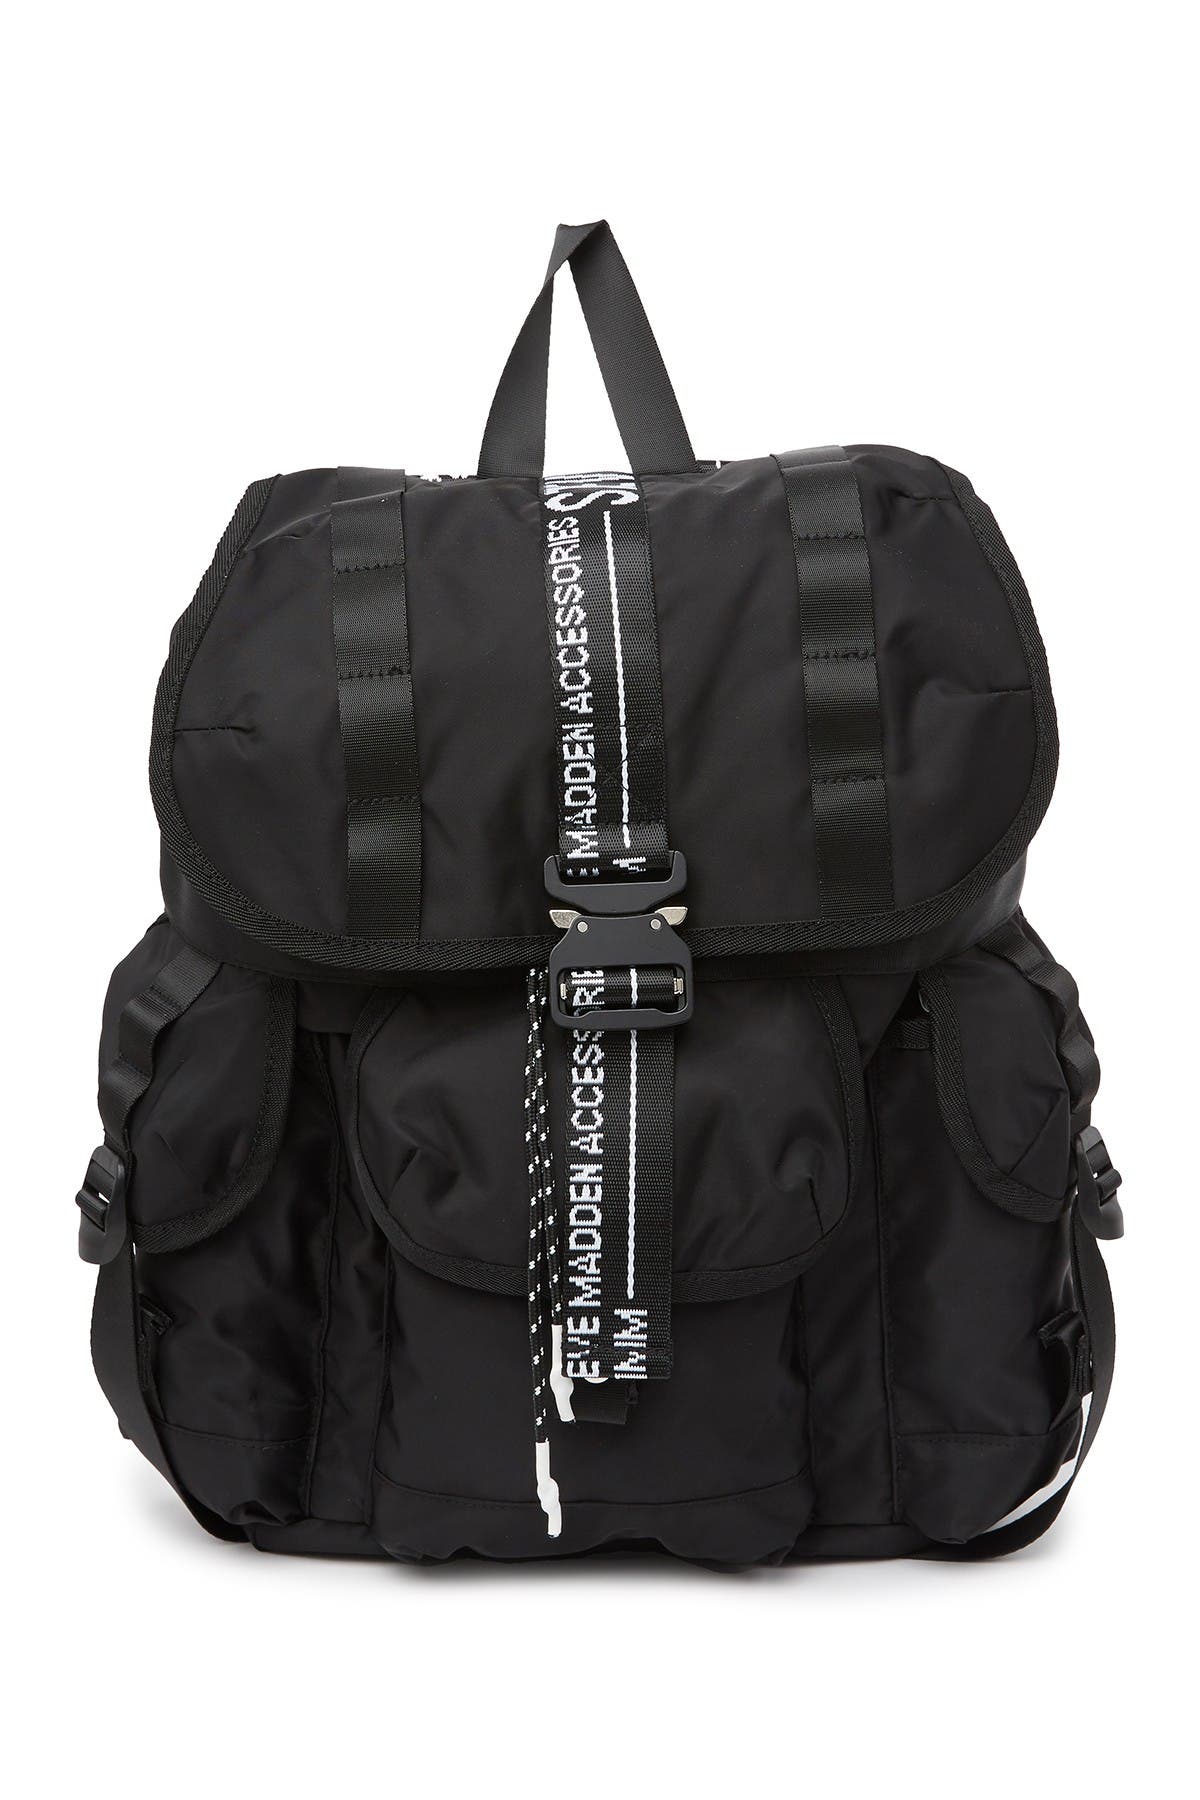 Steve Madden | Logo Utility Backpack | Nordstrom Rack